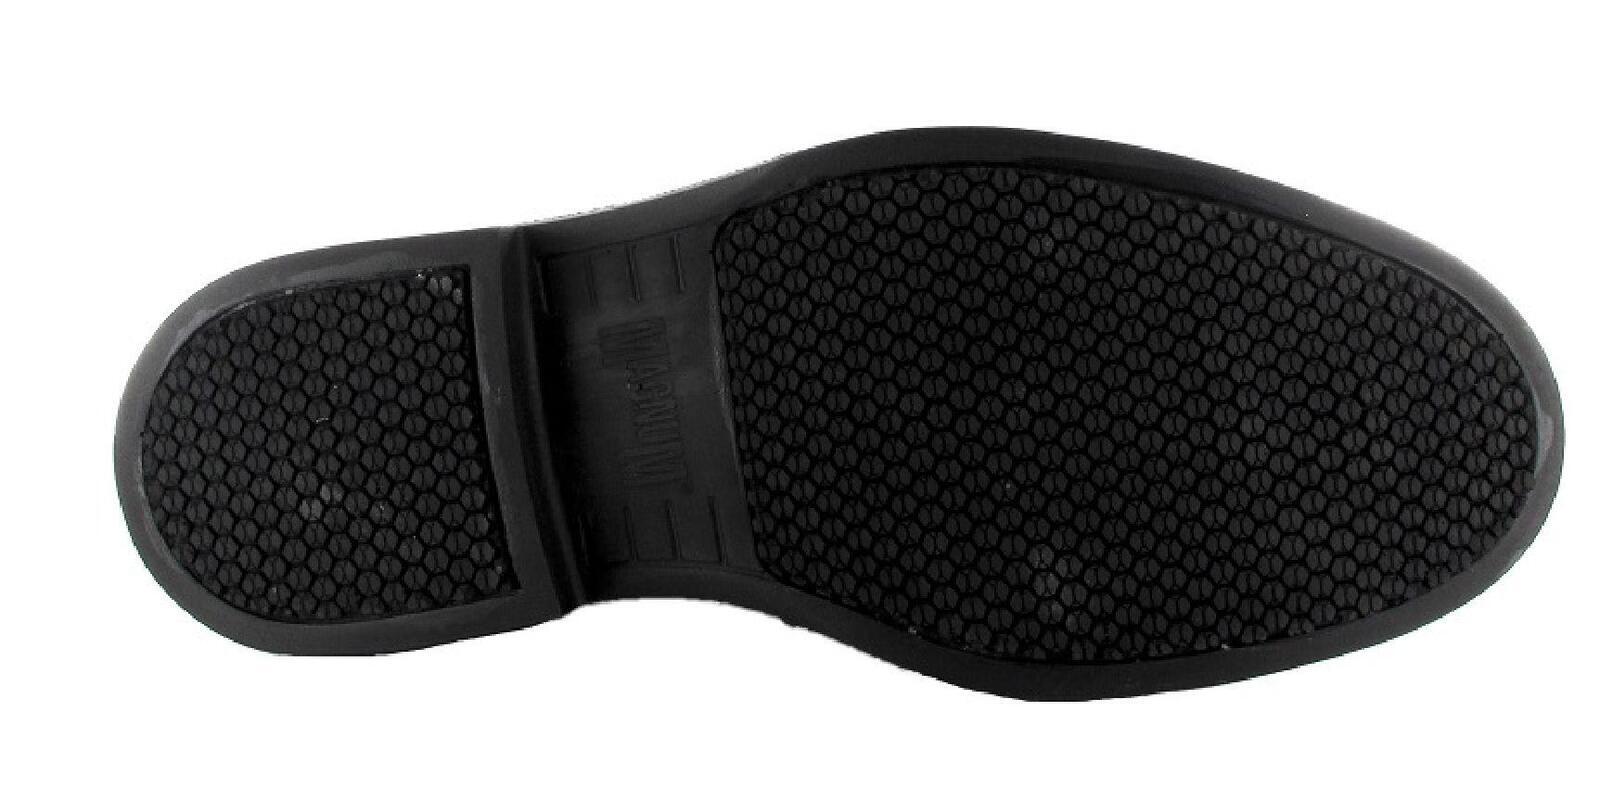 Magnum Active Duty Pull On Comfort Black Men's Boots Size AU/UK 3 (US 4) Colour Black